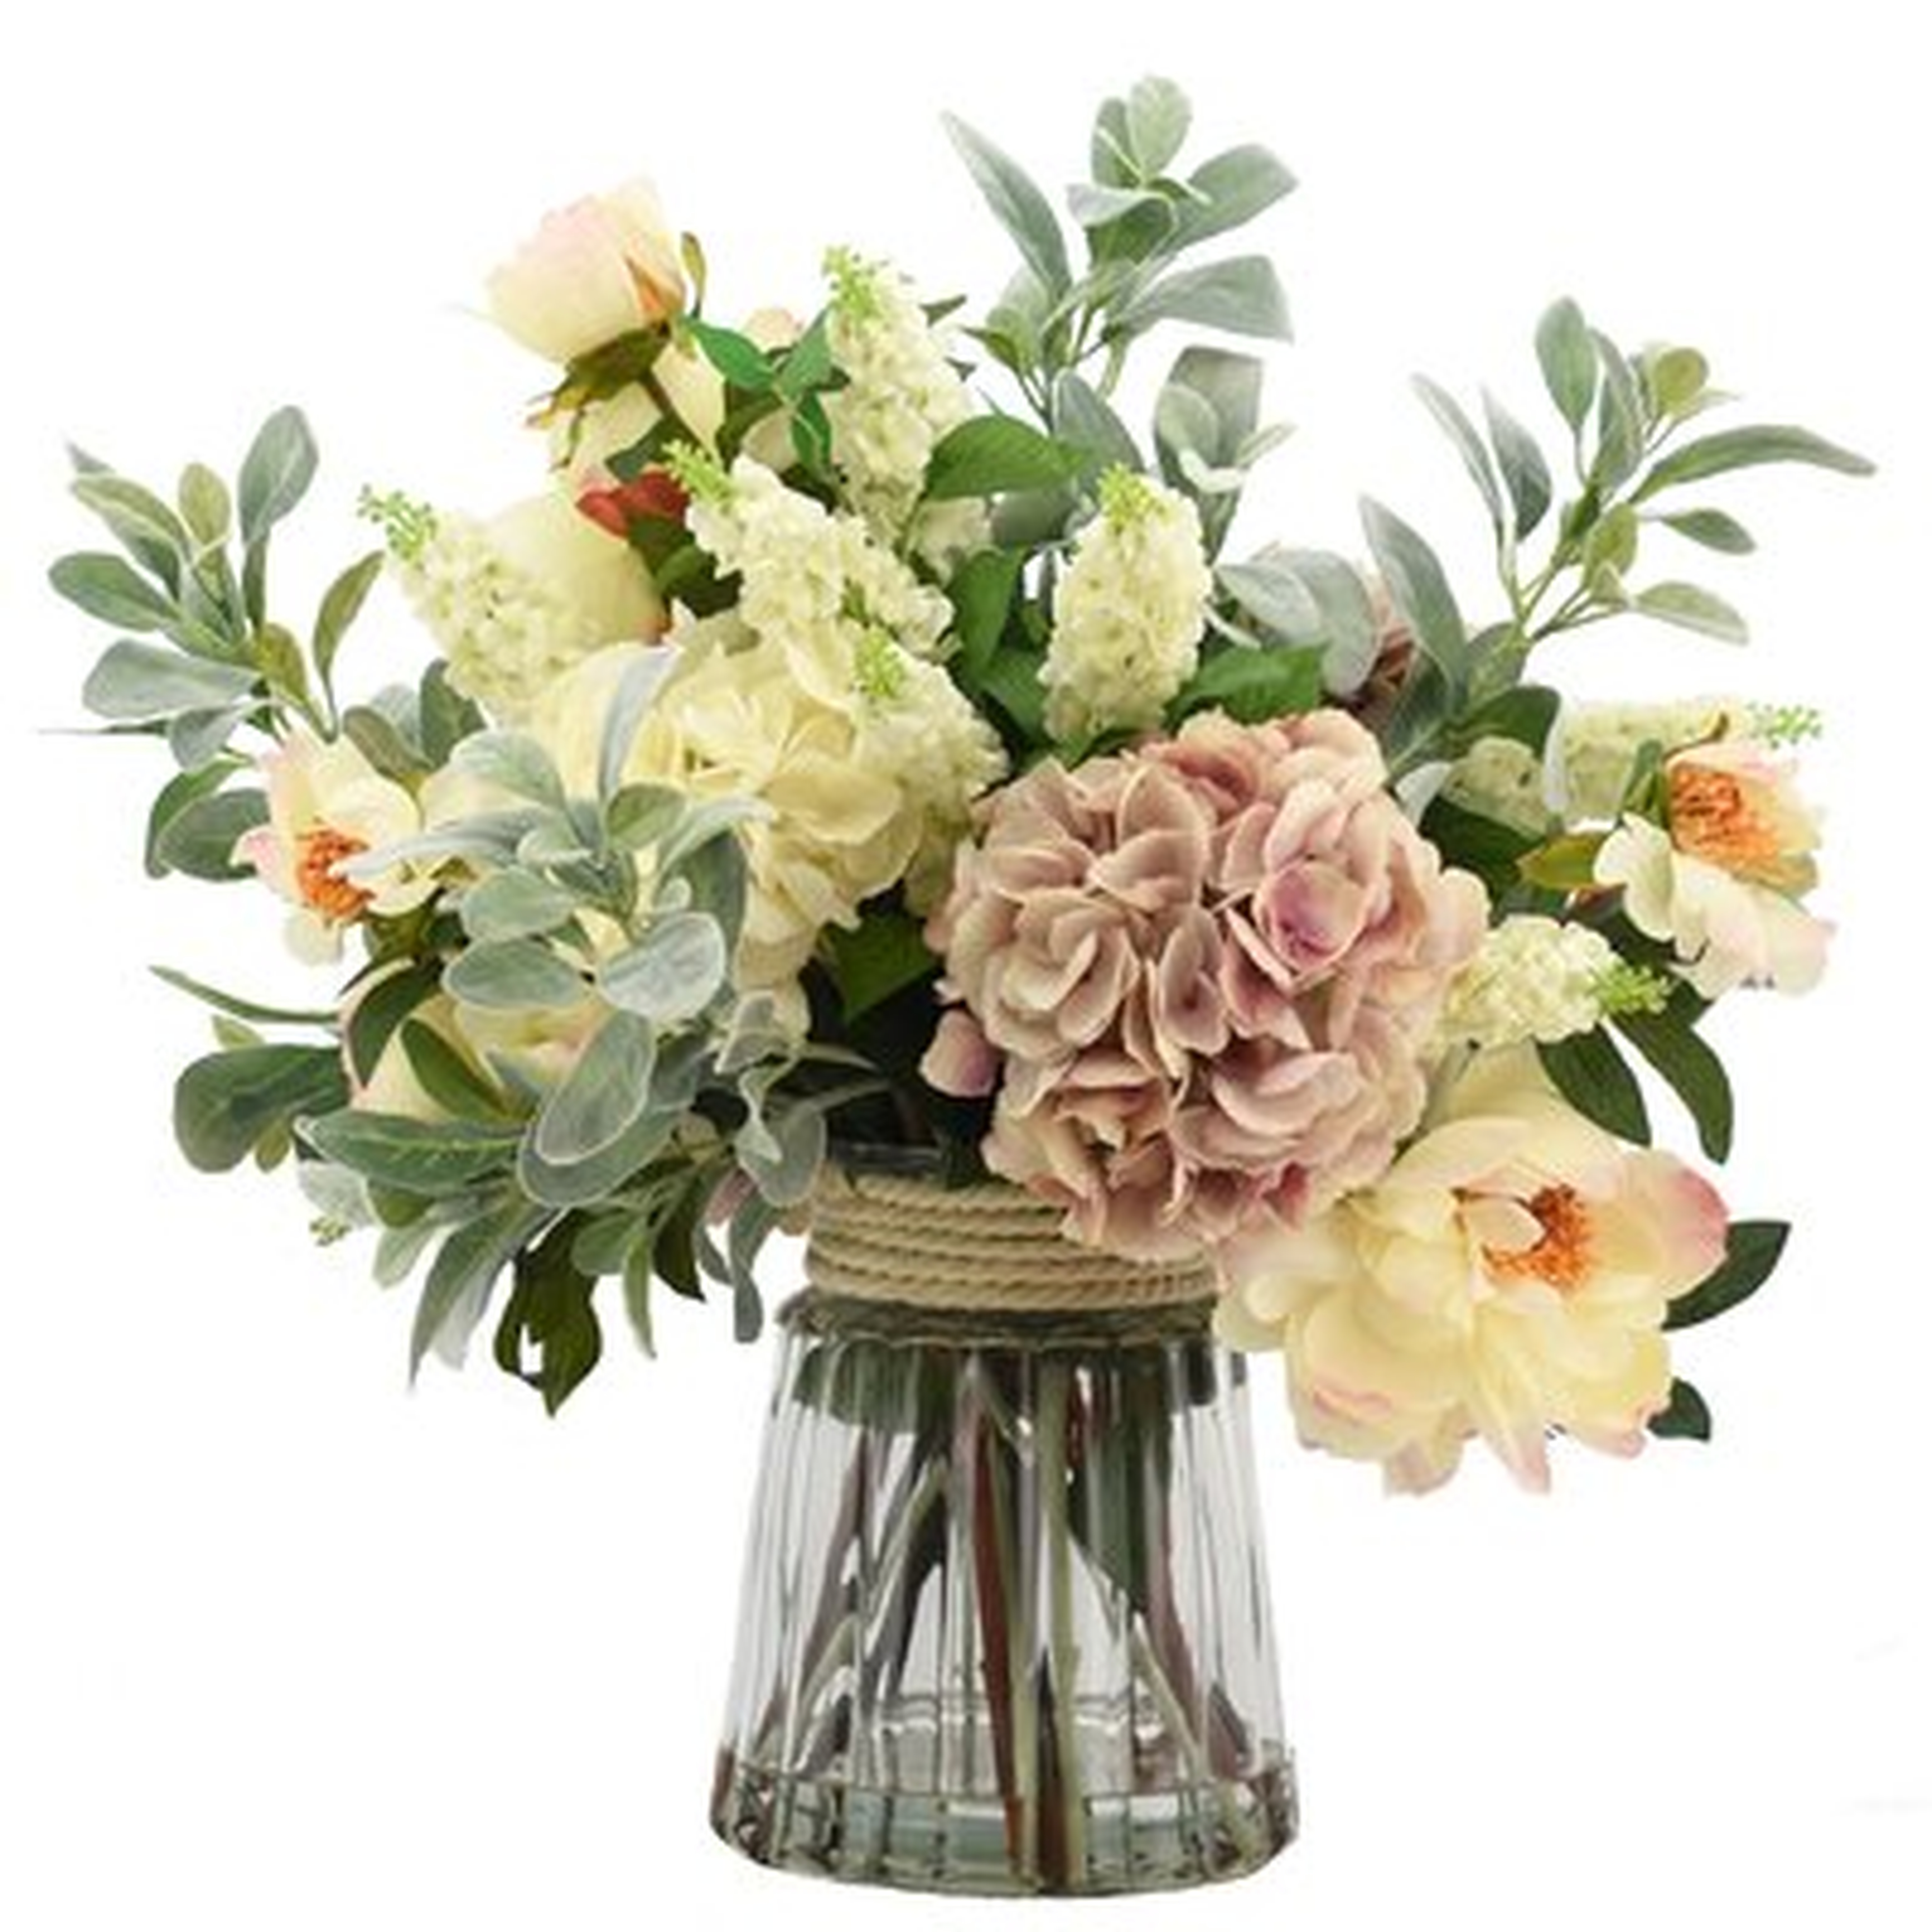 Mixed Floral Arrangement in Glass Vase - Birch Lane